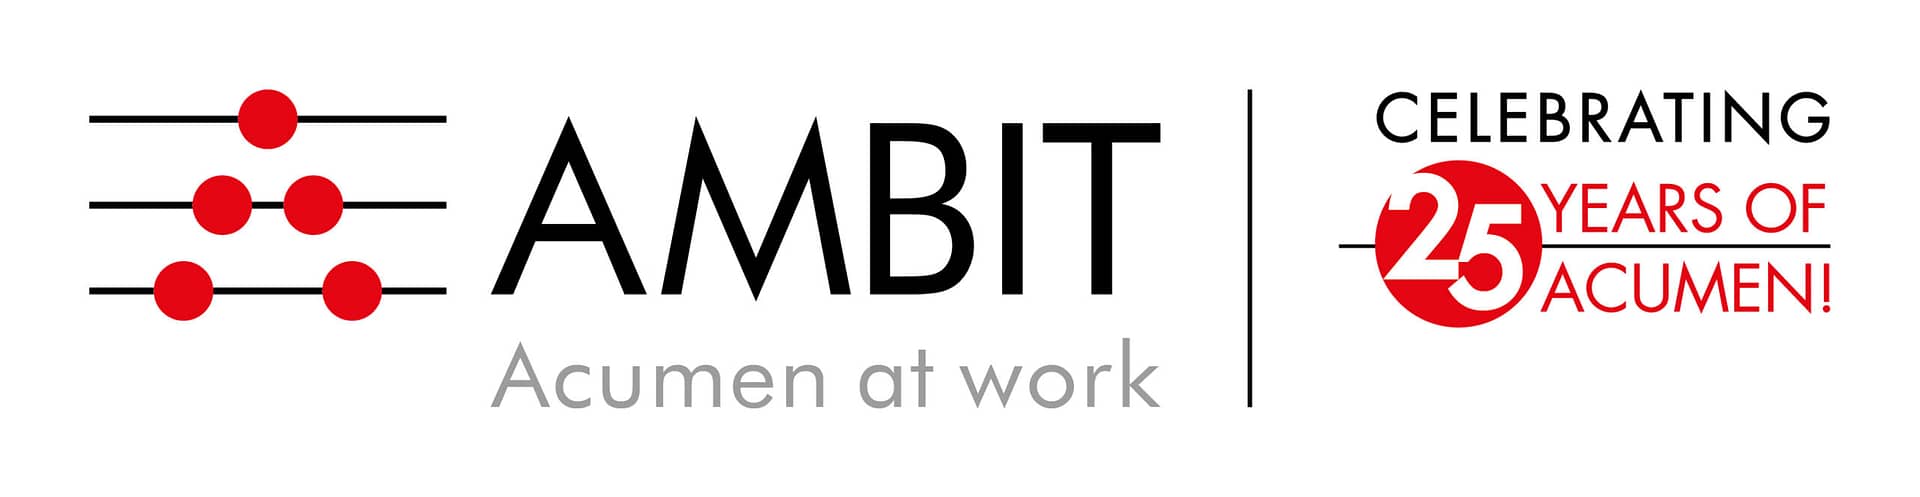 ambit_logo